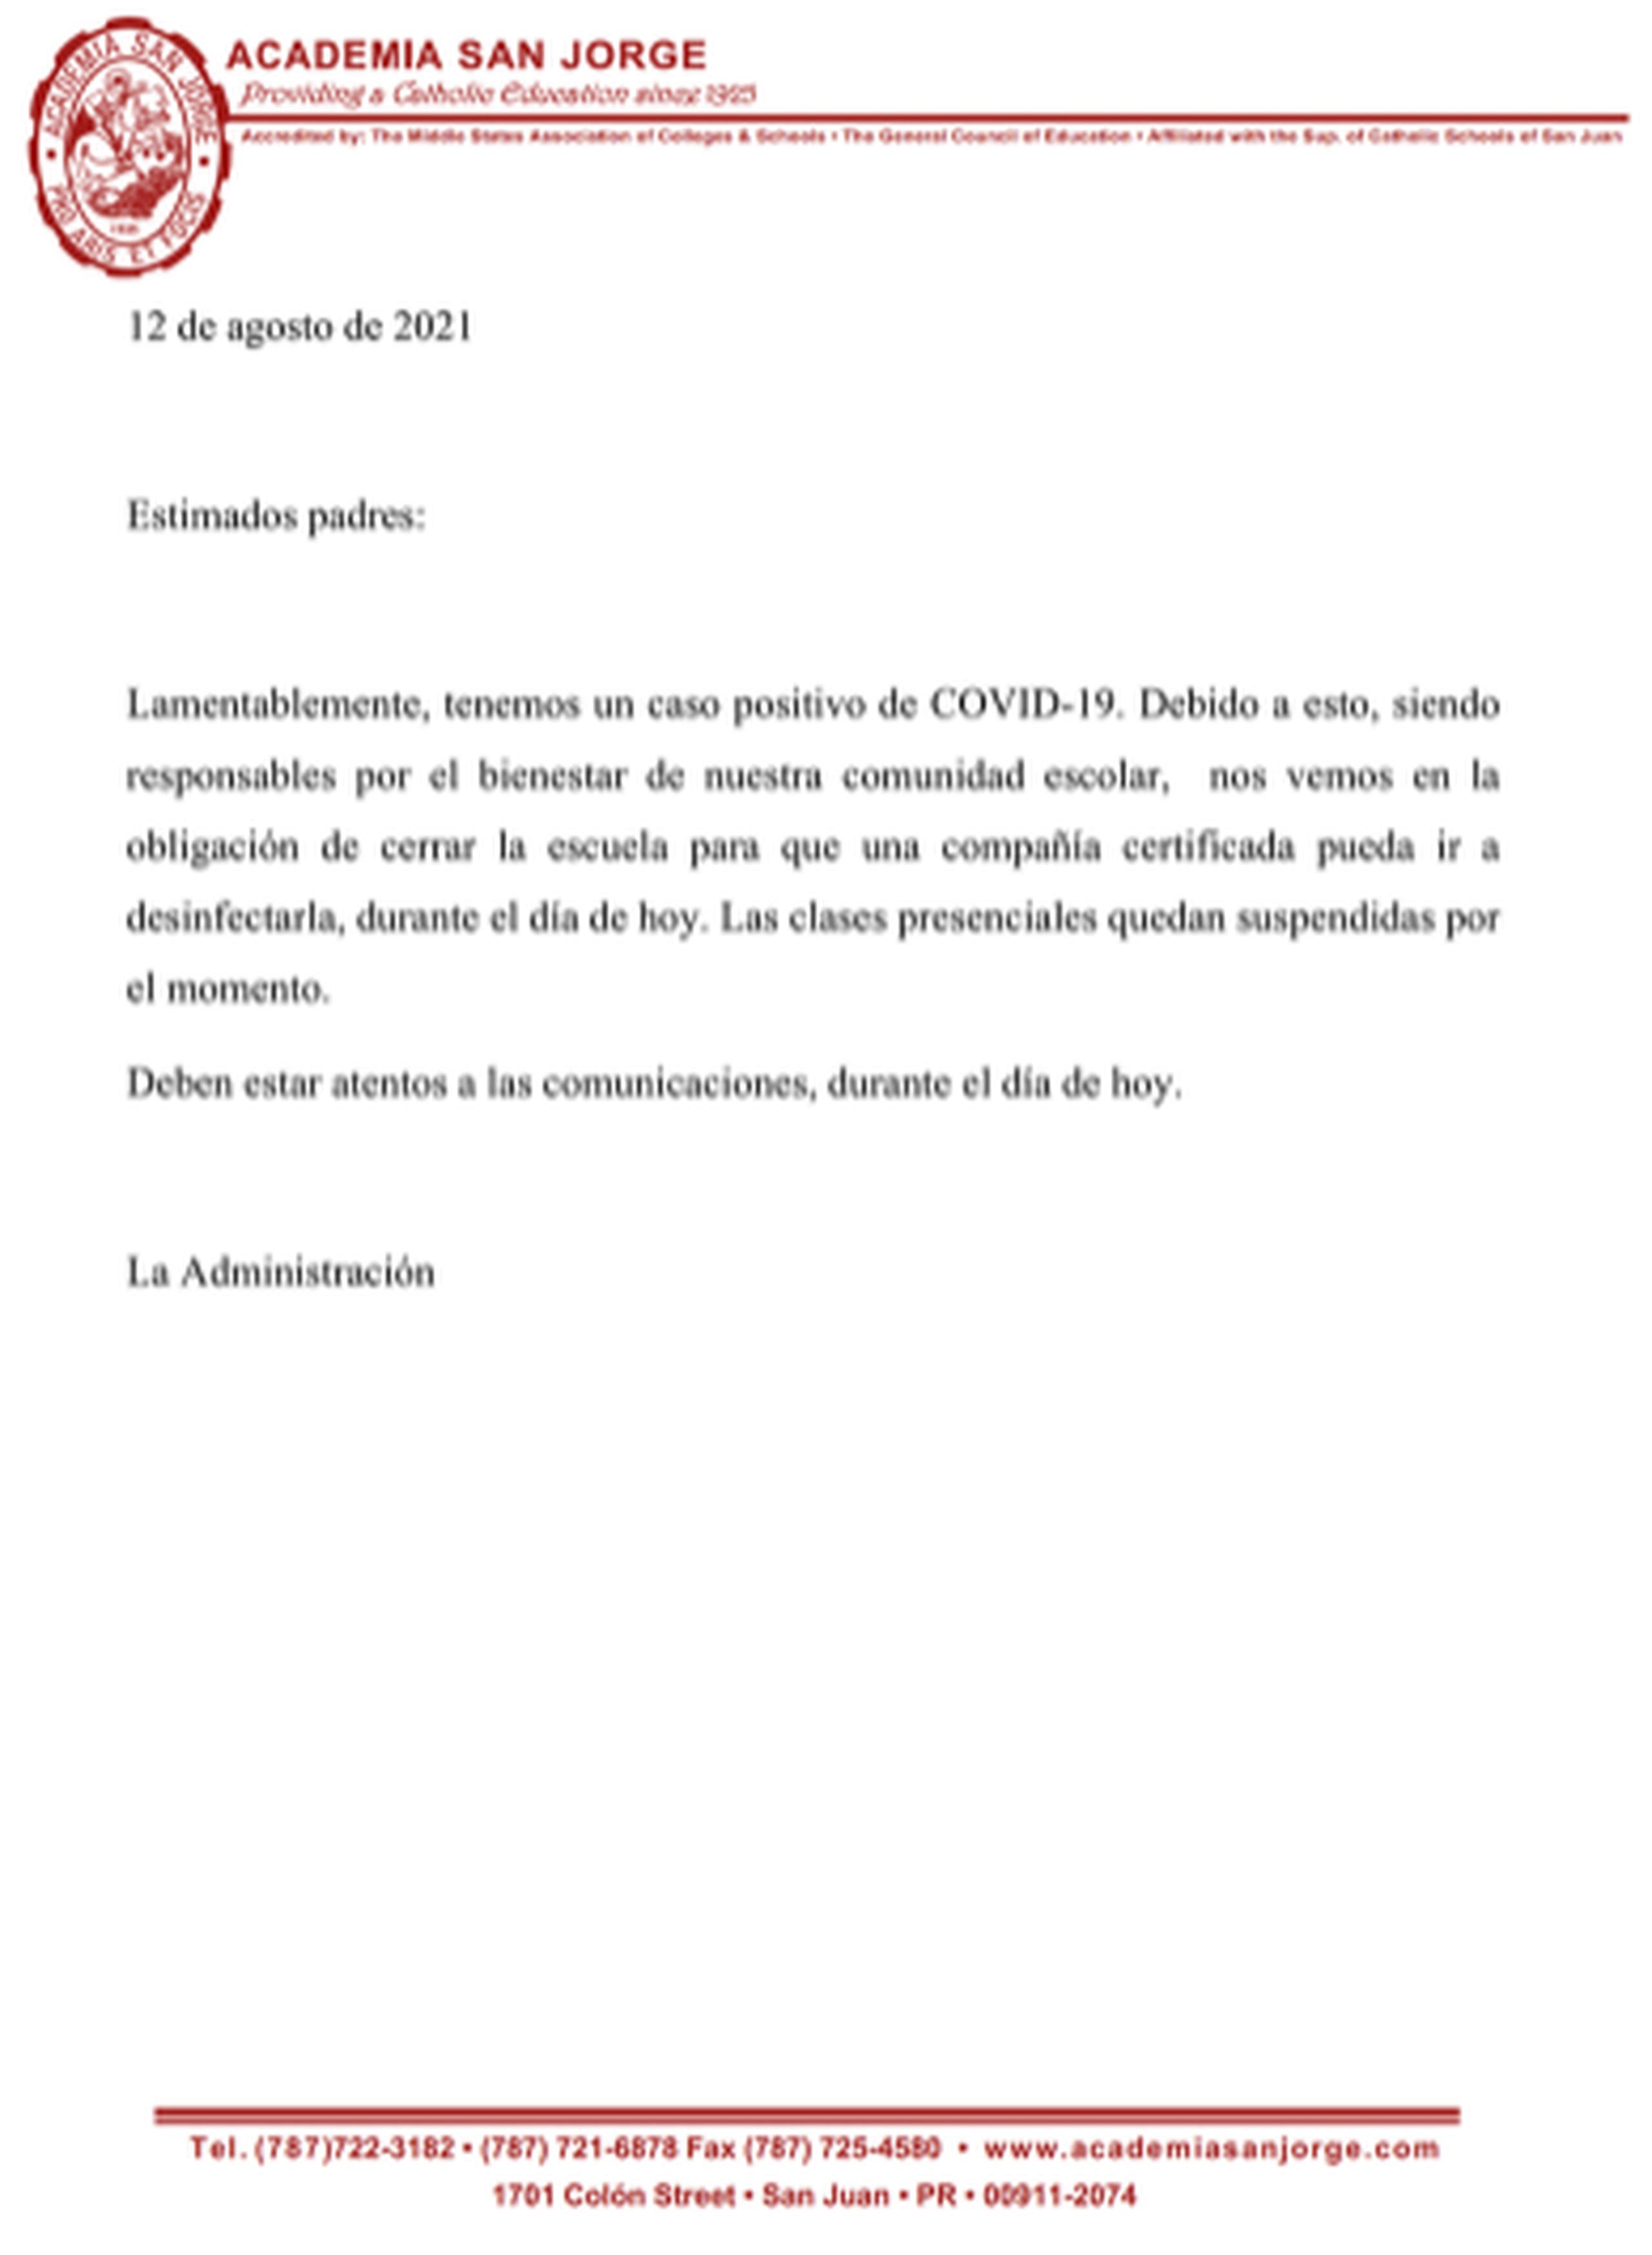 Carta publicada por la Academia San Jorge.